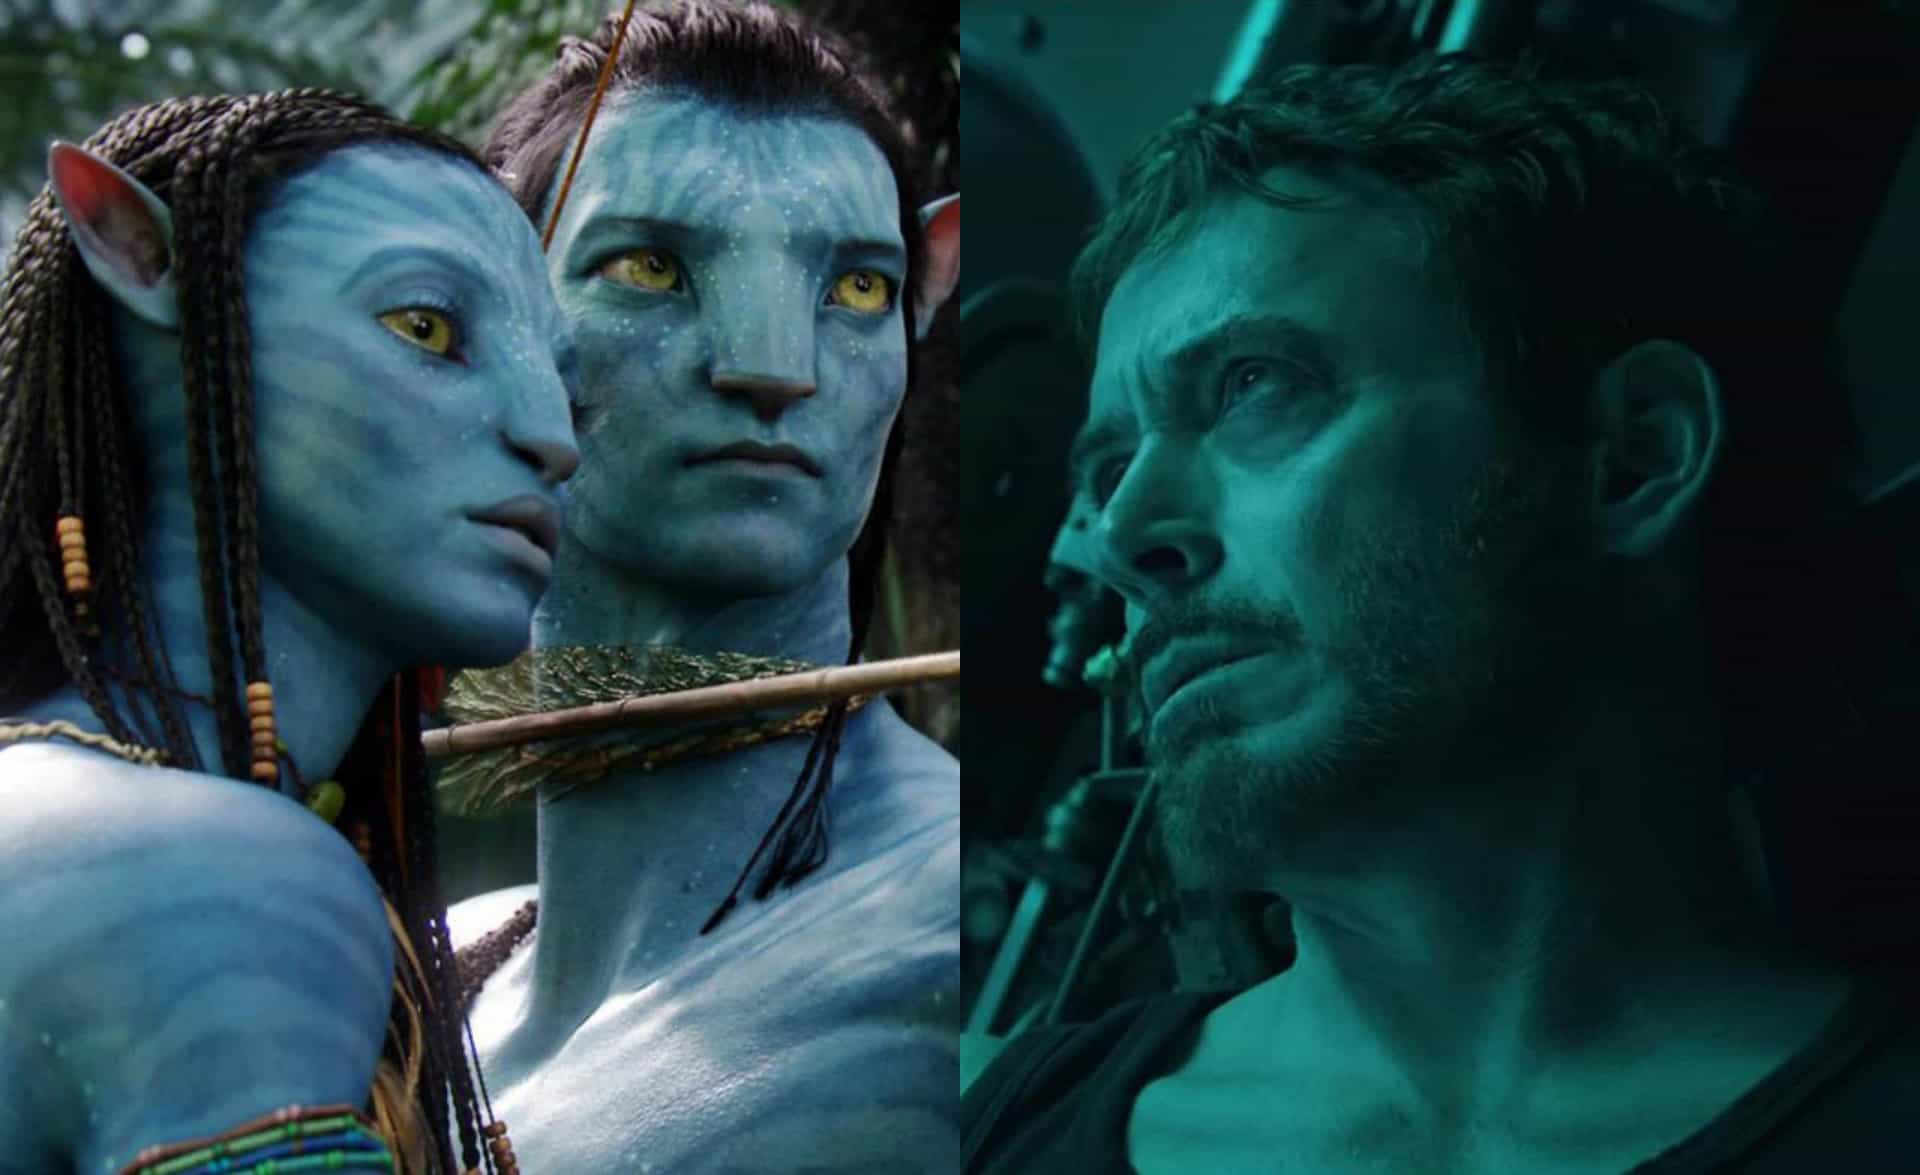 <p>James Camerons bahnbrechender Blockbuster "Avatar" aus dem Jahr 2009 hielt den Rekord für den umsatzstärksten Film der Geschichte für ganze 10 Jahre. Es war der erste Film, der mehr als 2 Milliarden US-Dollar an den Kinokassen einspielte, obwohl er später von mehreren Filmen der "Avengers"-Filmreihe überholt wurde. Die lang erwartete Fortsetzung "Avatar: The Way of Water" kam schließlich im Dezember 2022 in die Kinos, und der Film wurde dem Hype (und dem finanziellen Erfolg) des ersten Films gerecht! Das dreistündige Epos spielte innerhalb von zwei Wochen nach seinem Erscheinen an den Kinokassen mehr als 1 Milliarde US-Dollar ein und ist damit der Film mit den höchsten Einnahmen des Jahres. Nur sechs Filme in der Geschichte haben in den ersten zwei Wochen nach Kinostart eine Milliarde eingespielt.</p> <p>Aber vergessen wir nicht, dass es nicht nur diese beiden grandiosen Blockbuster in der Kinogeschichte gab. Klicken Sie sich durch die Galerie und finden Sie heraus, wie viel "Avatar" und die "Avengers" einspielten und welche anderen Filme es noch in die Top 30 geschafft haben.</p> <p>Alle Angaben von Box Office Mojo. Alle Daten in US-Dollar. </p><p>Sie können auch mögen:<a href="https://de.starsinsider.com/n/166391?utm_source=msn.com&utm_medium=display&utm_campaign=referral_description&utm_content=383153v2"> Andalusien: Wo Griechen, Juden und Araber gemeinsam Geschichte schrieben</a></p>